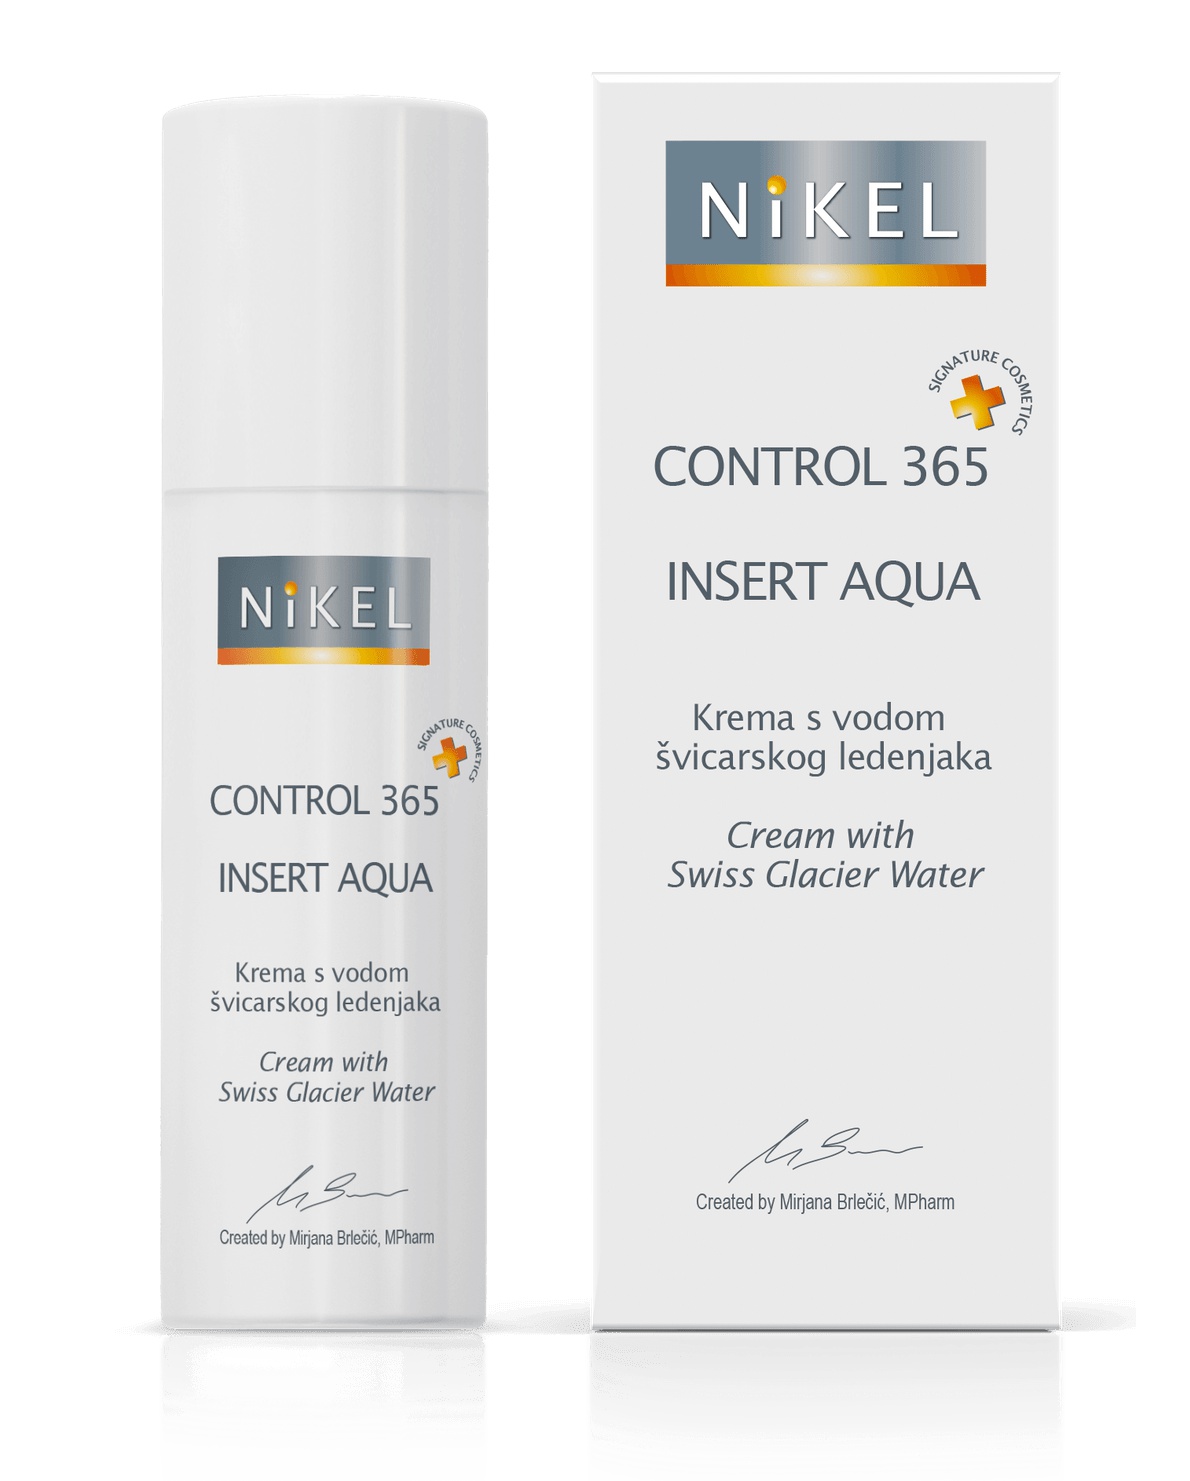 NIKEL Control 365 Insert Aqua